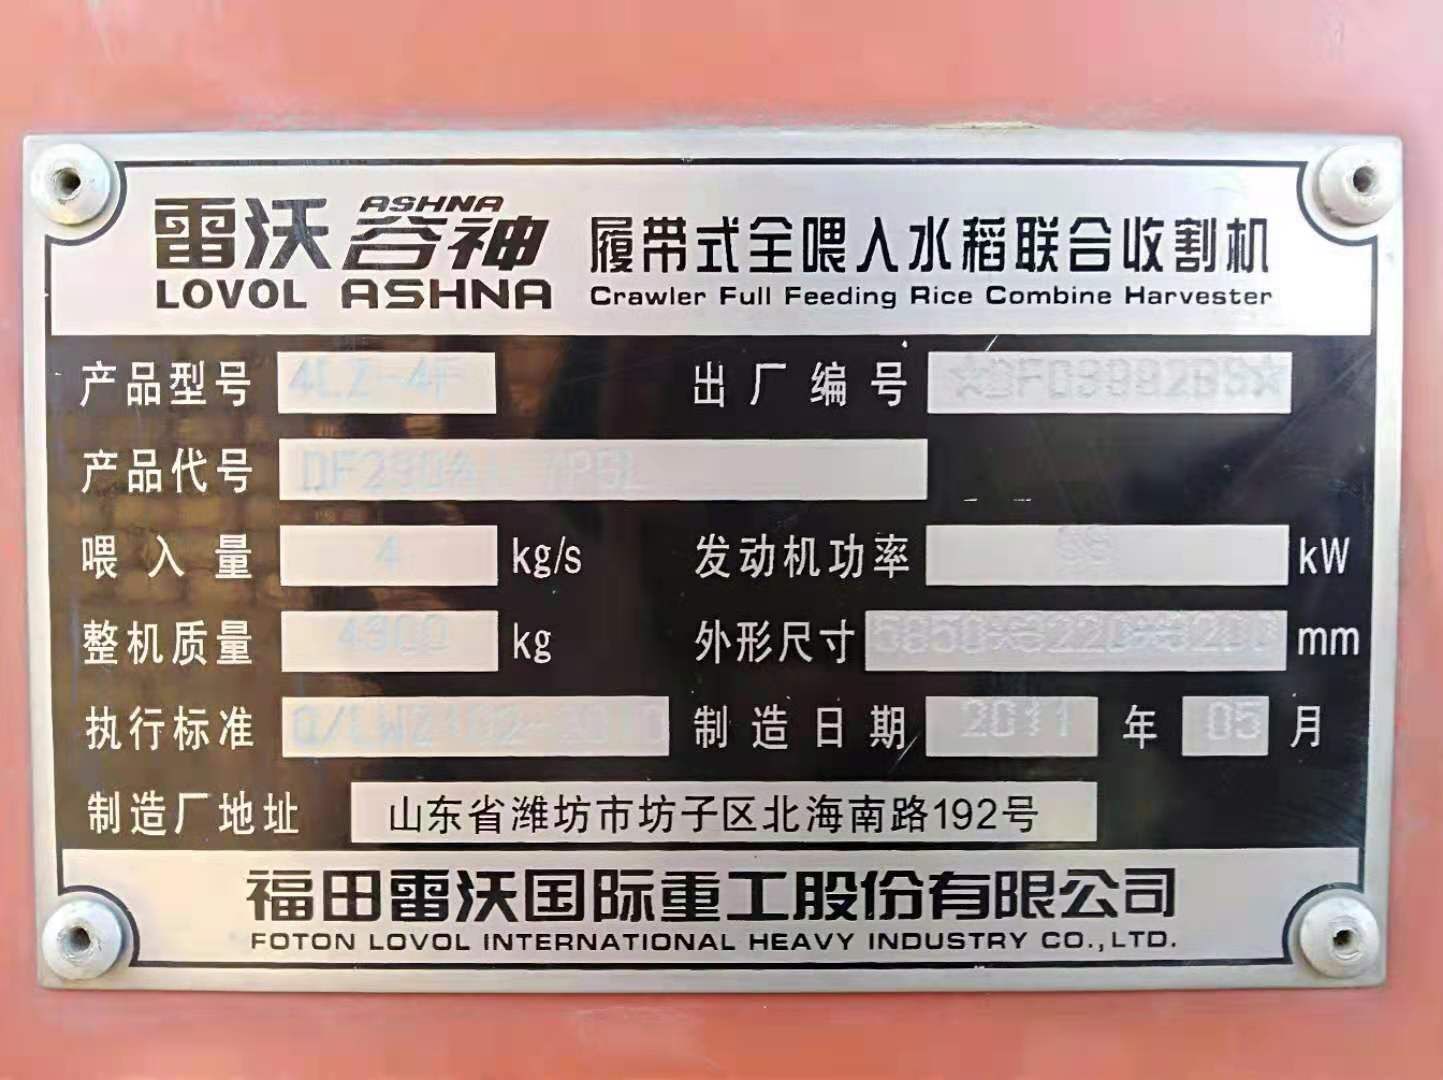 【佳木斯】雷沃谷神履带式全喂入水稻联合收割机 价格1.80万 二手车